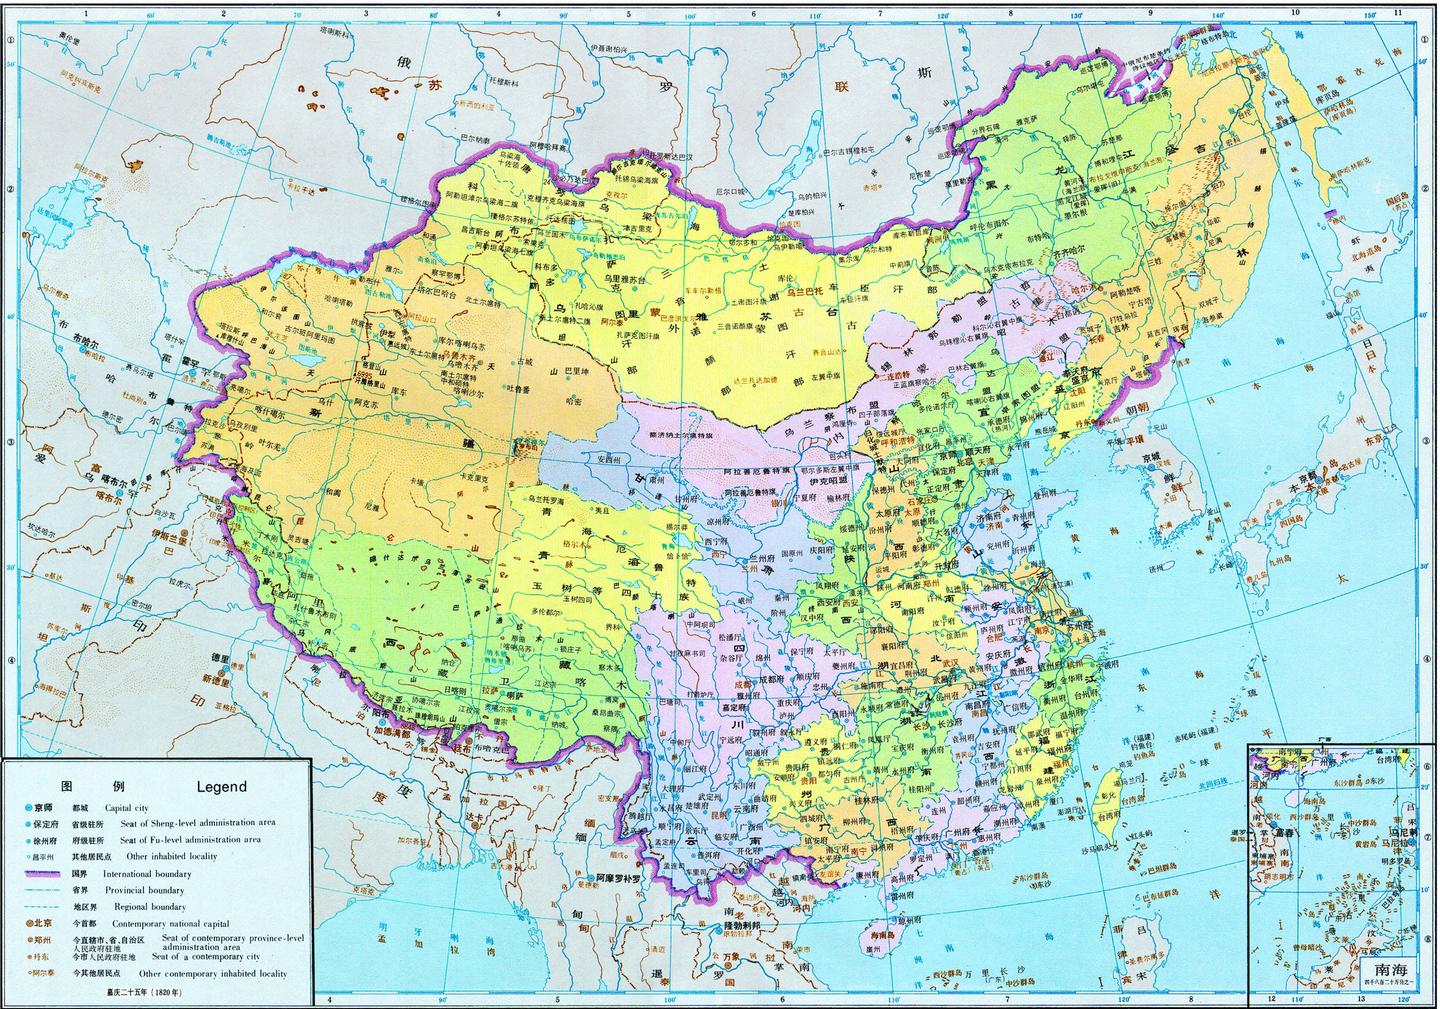 中国地图风景概括旅游旅行矢量素材免费下载 - 觅知网